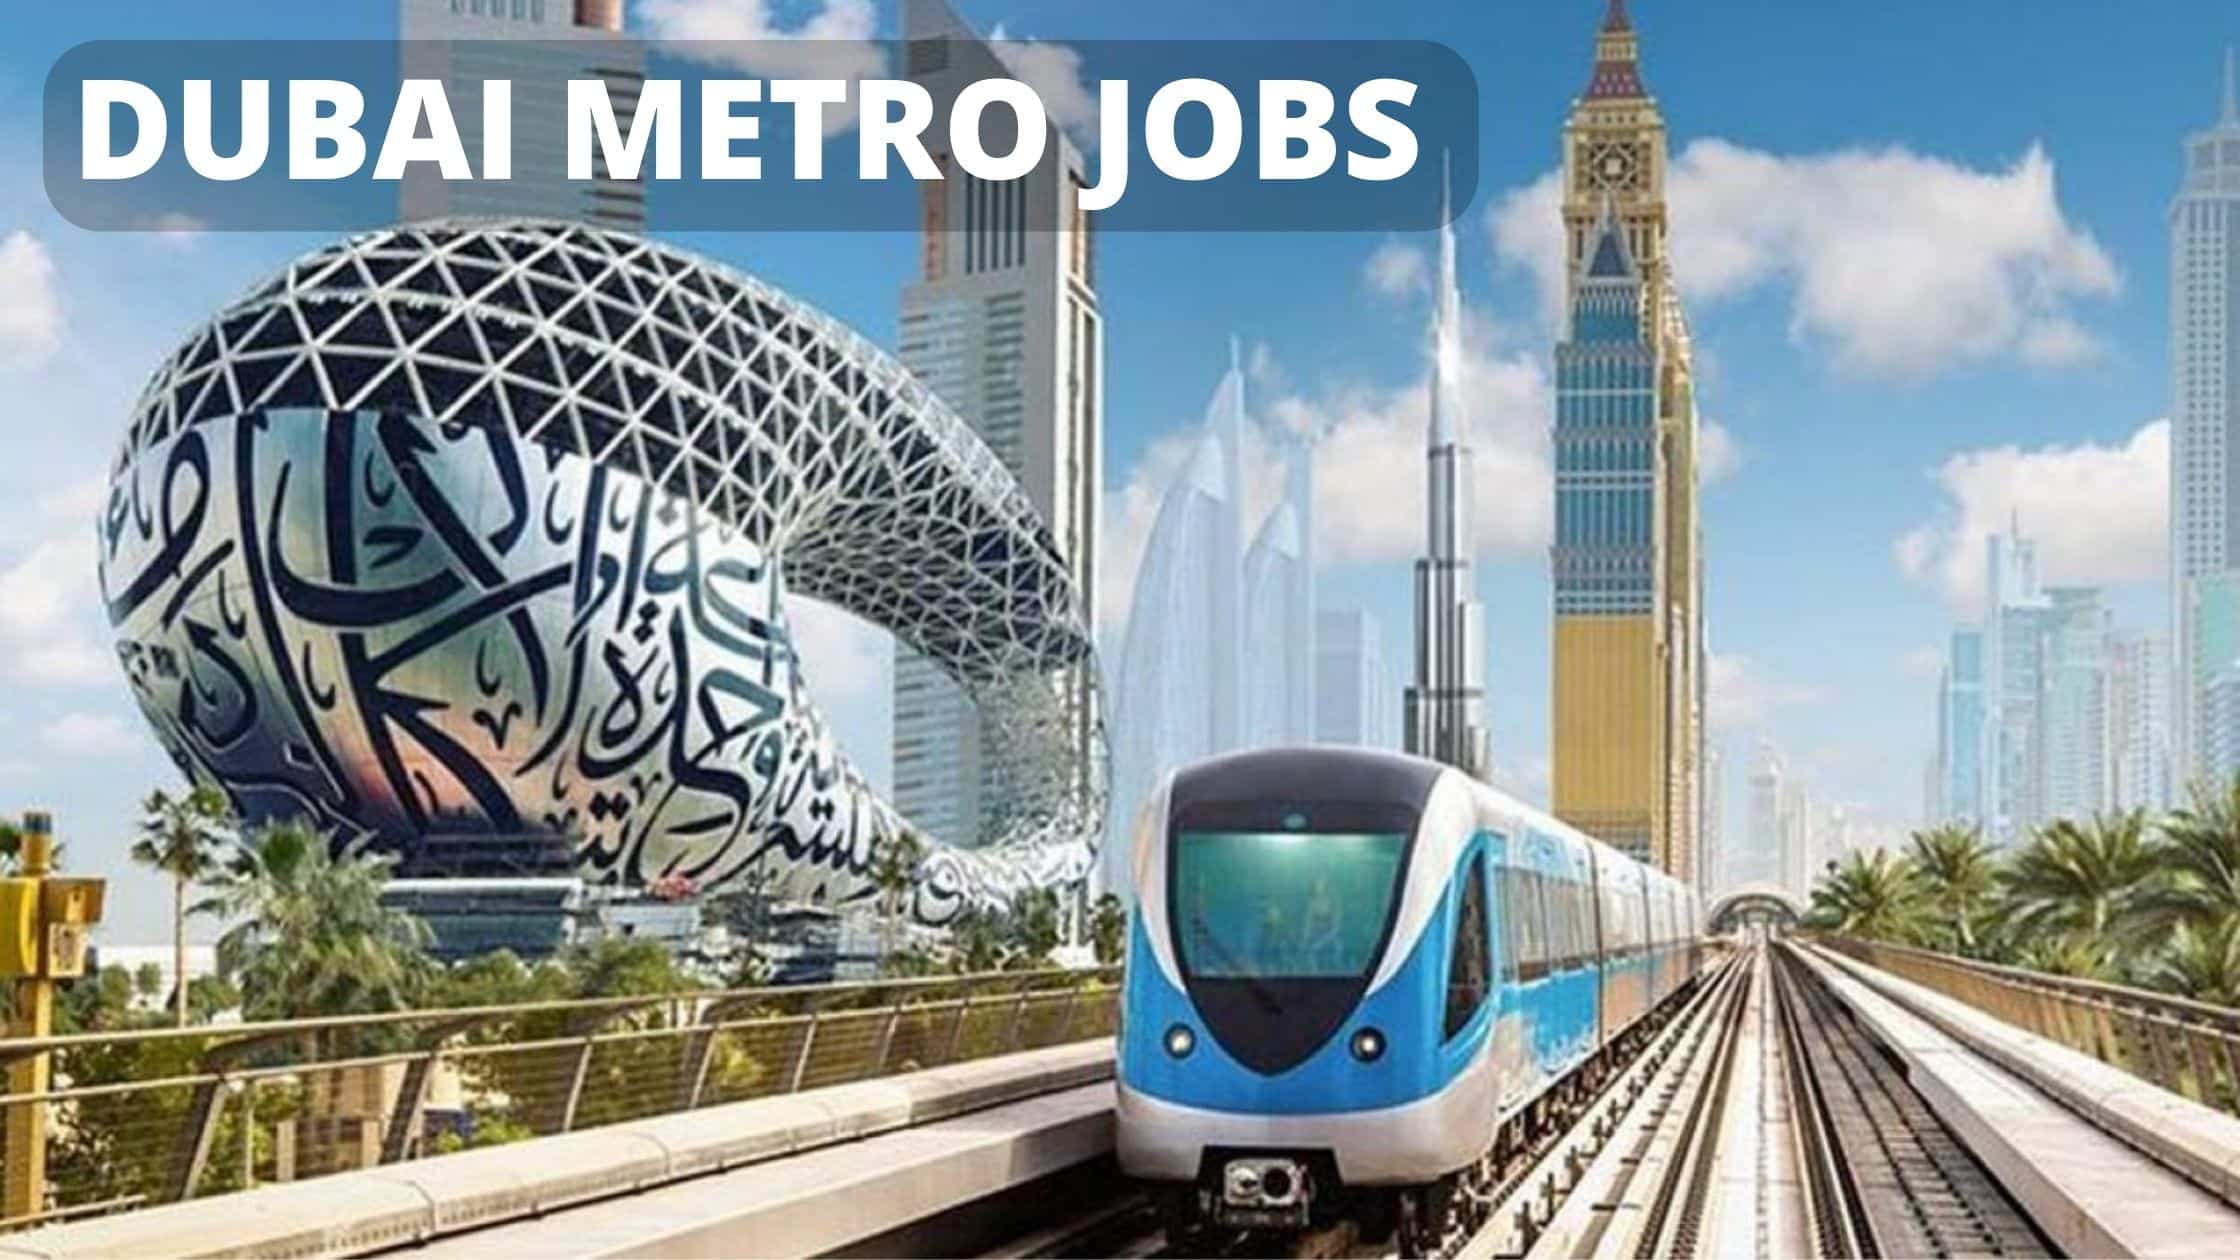 Dubai Metro Careers 2022-Latest UAE Job Openings